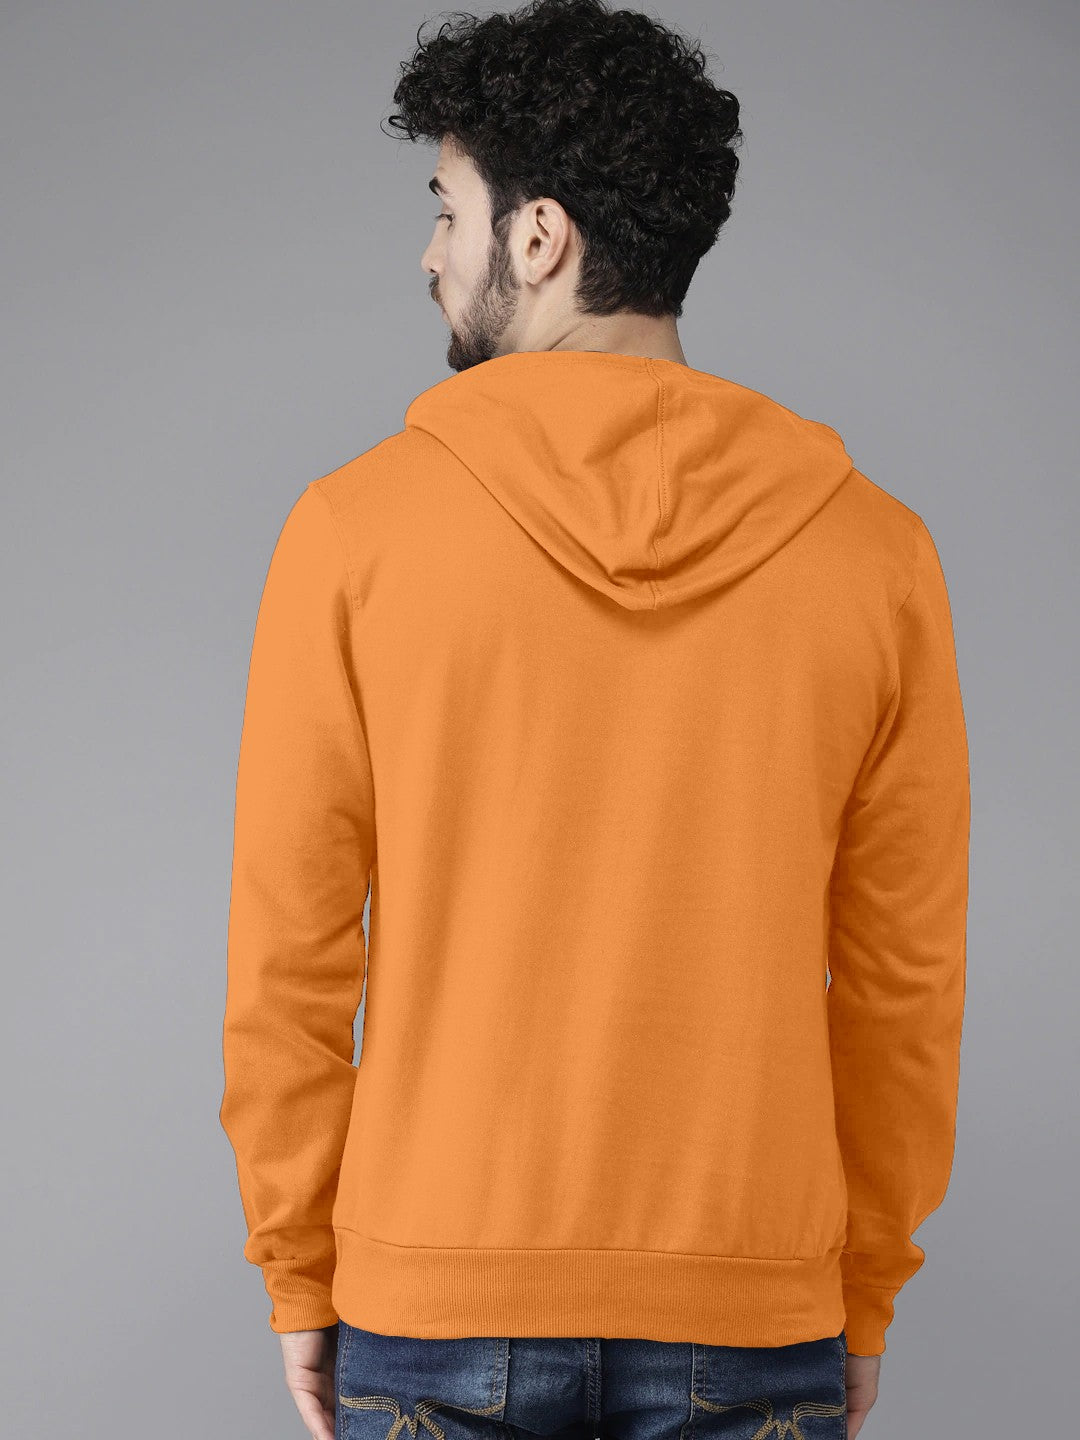 Orange Colour High Quality Premium Hoodie For Men